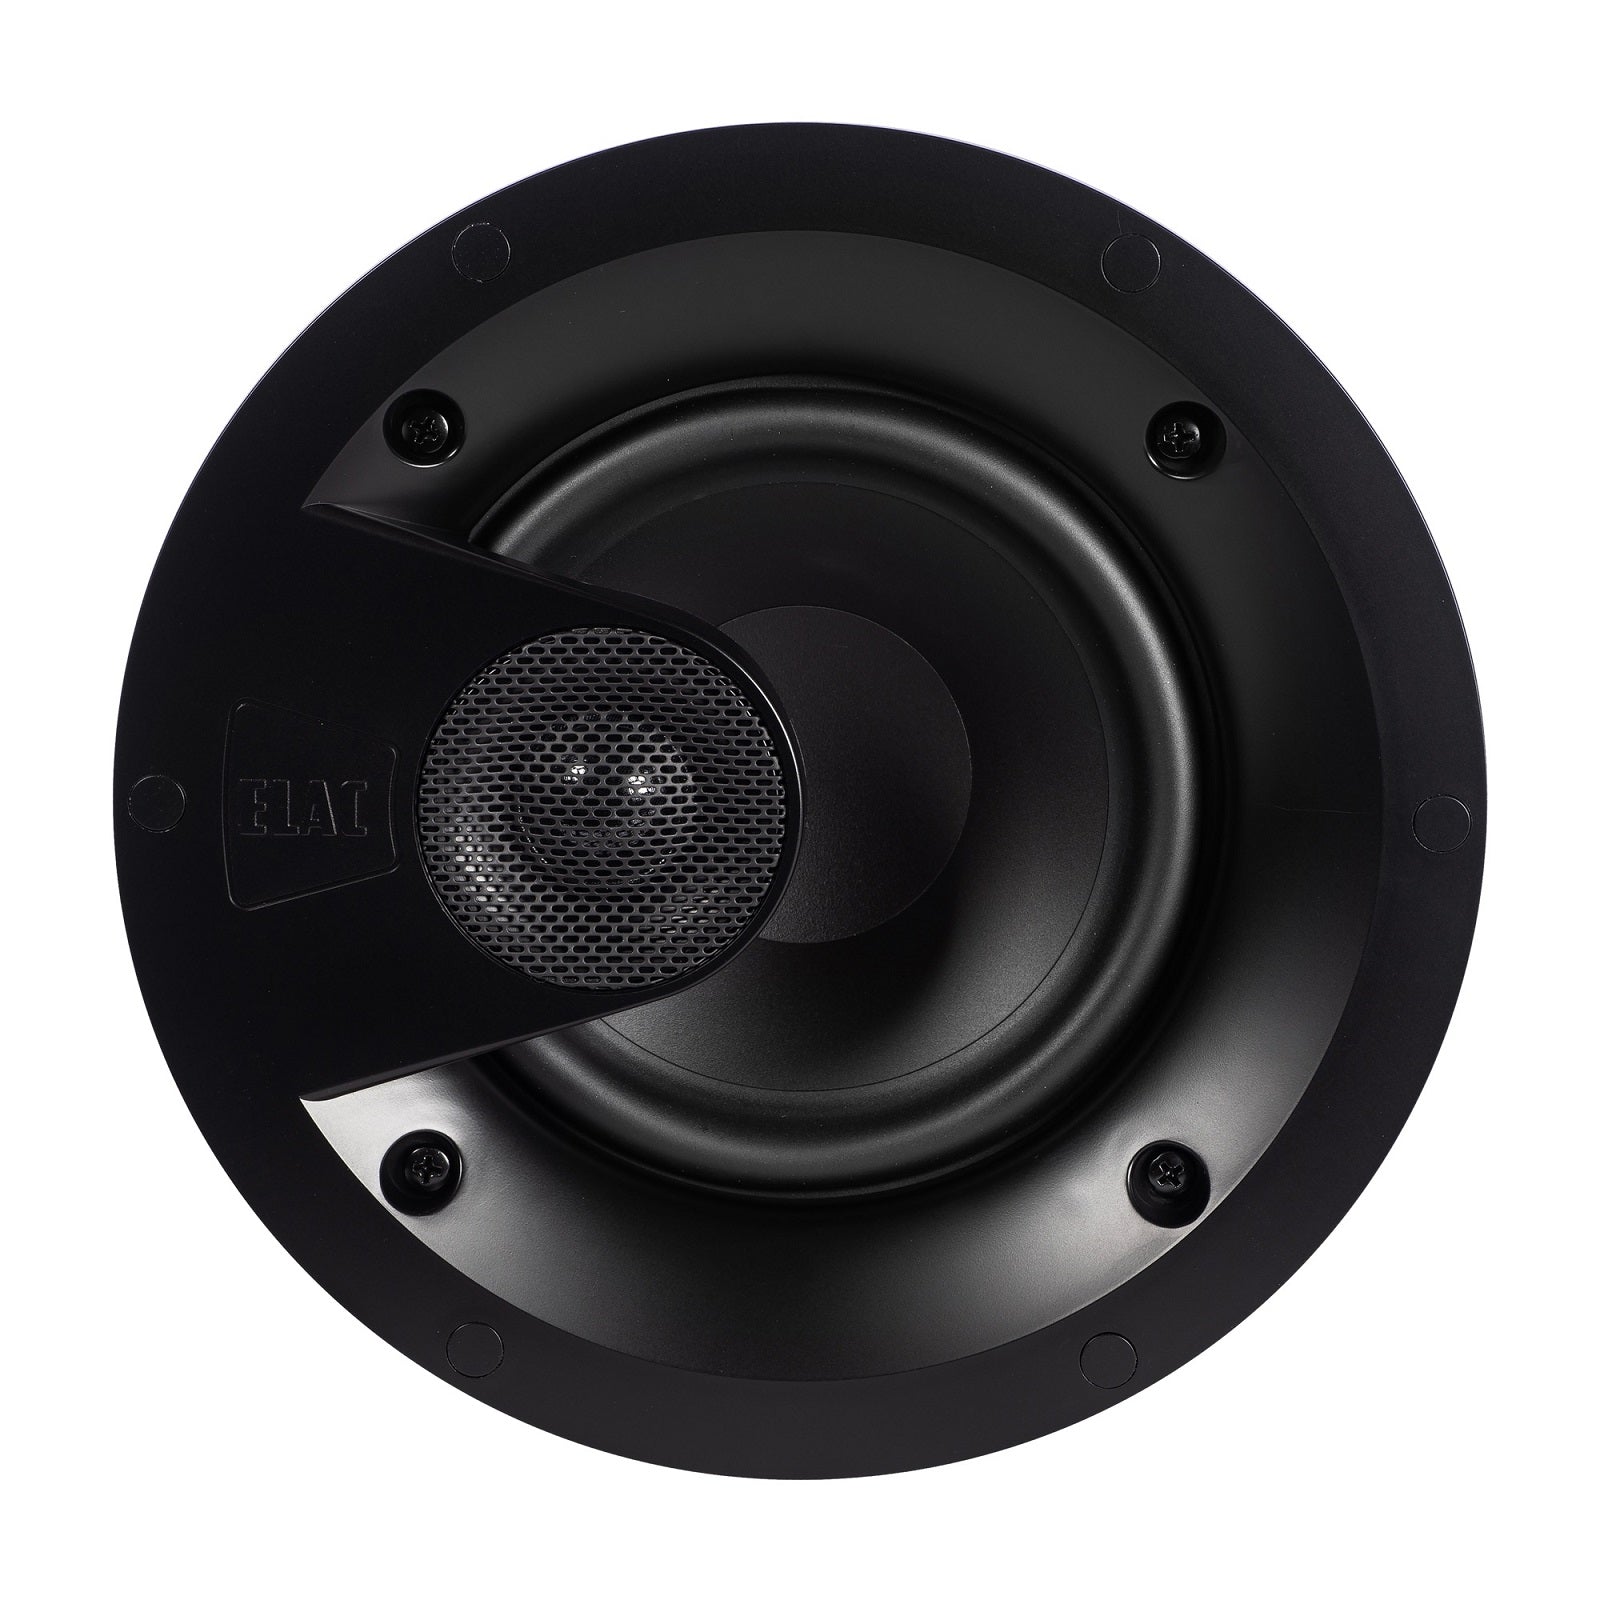 ELAC Vertex IC-V61-W 6.5" In-Ceiling 2-way Speaker